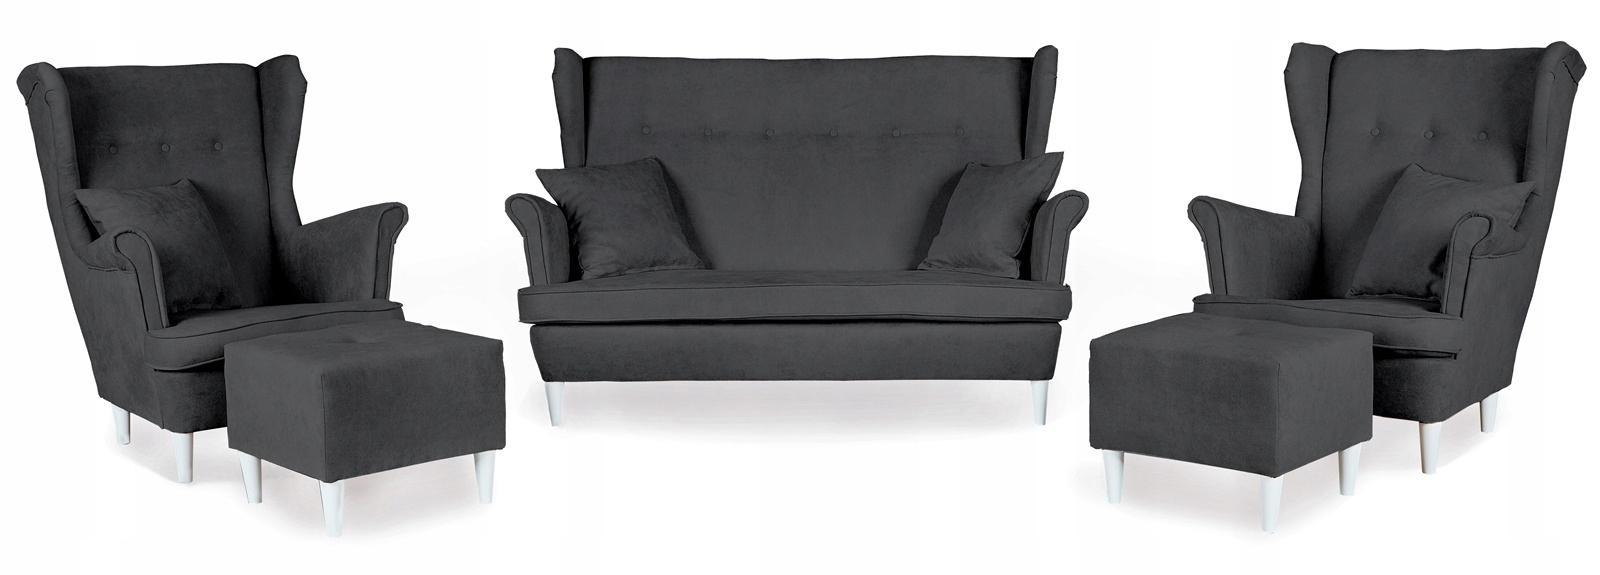 Zestaw wypoczynkowy mebli ARI 149x104x92 cm uszak sofa fotele pufy do salonu Enjoy ciemny grafit nr. 1